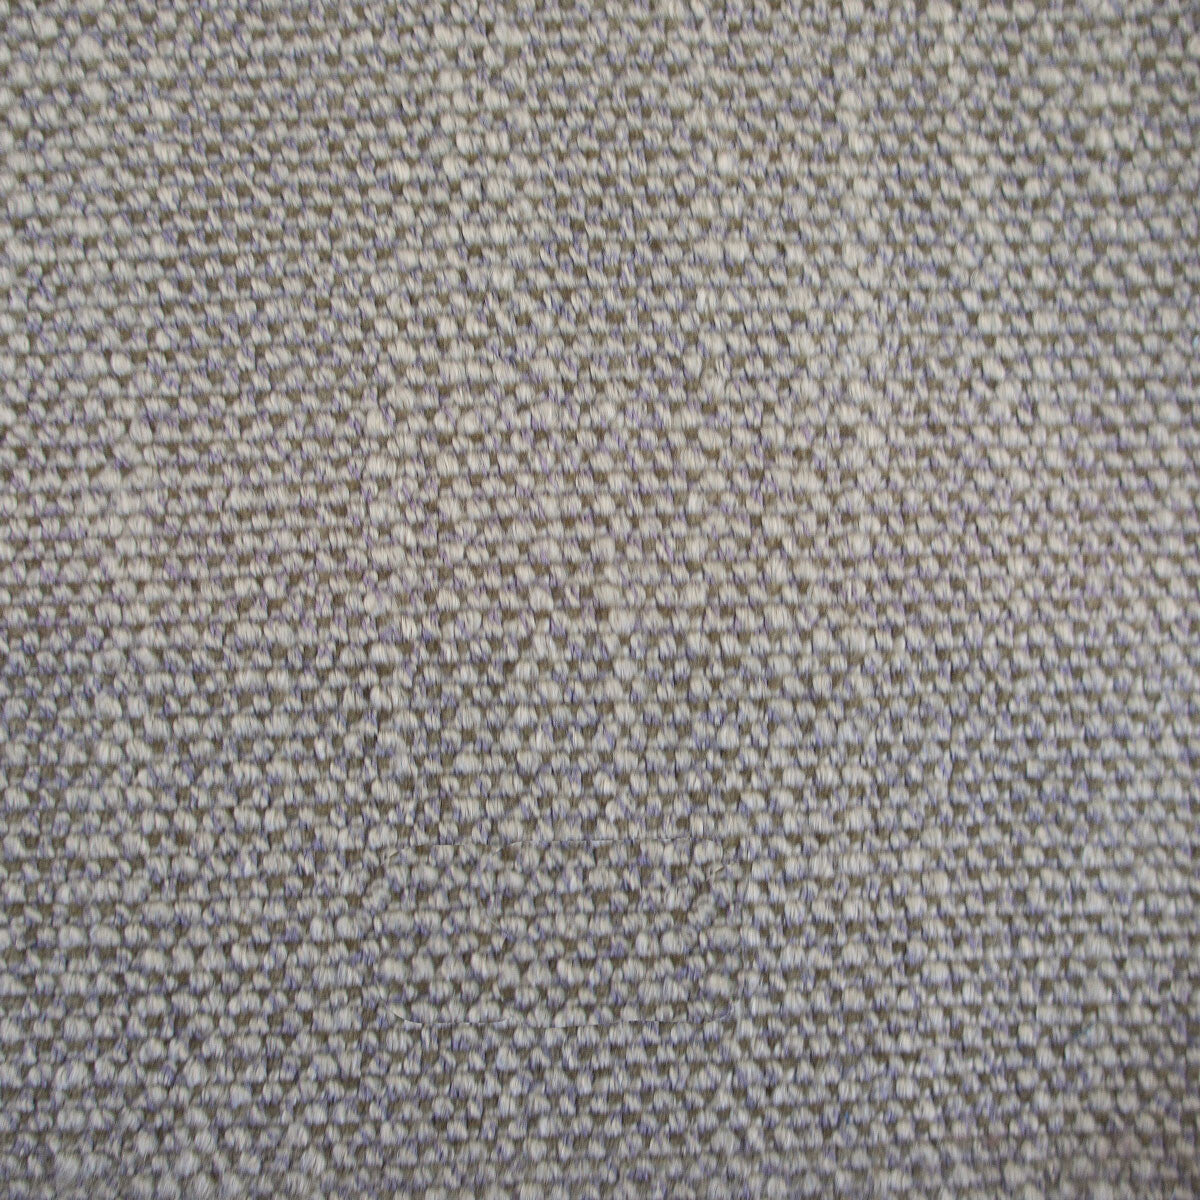 Hugo fabric in topo color - pattern LCT1053.004.0 - by Gaston y Daniela in the Lorenzo Castillo VI collection